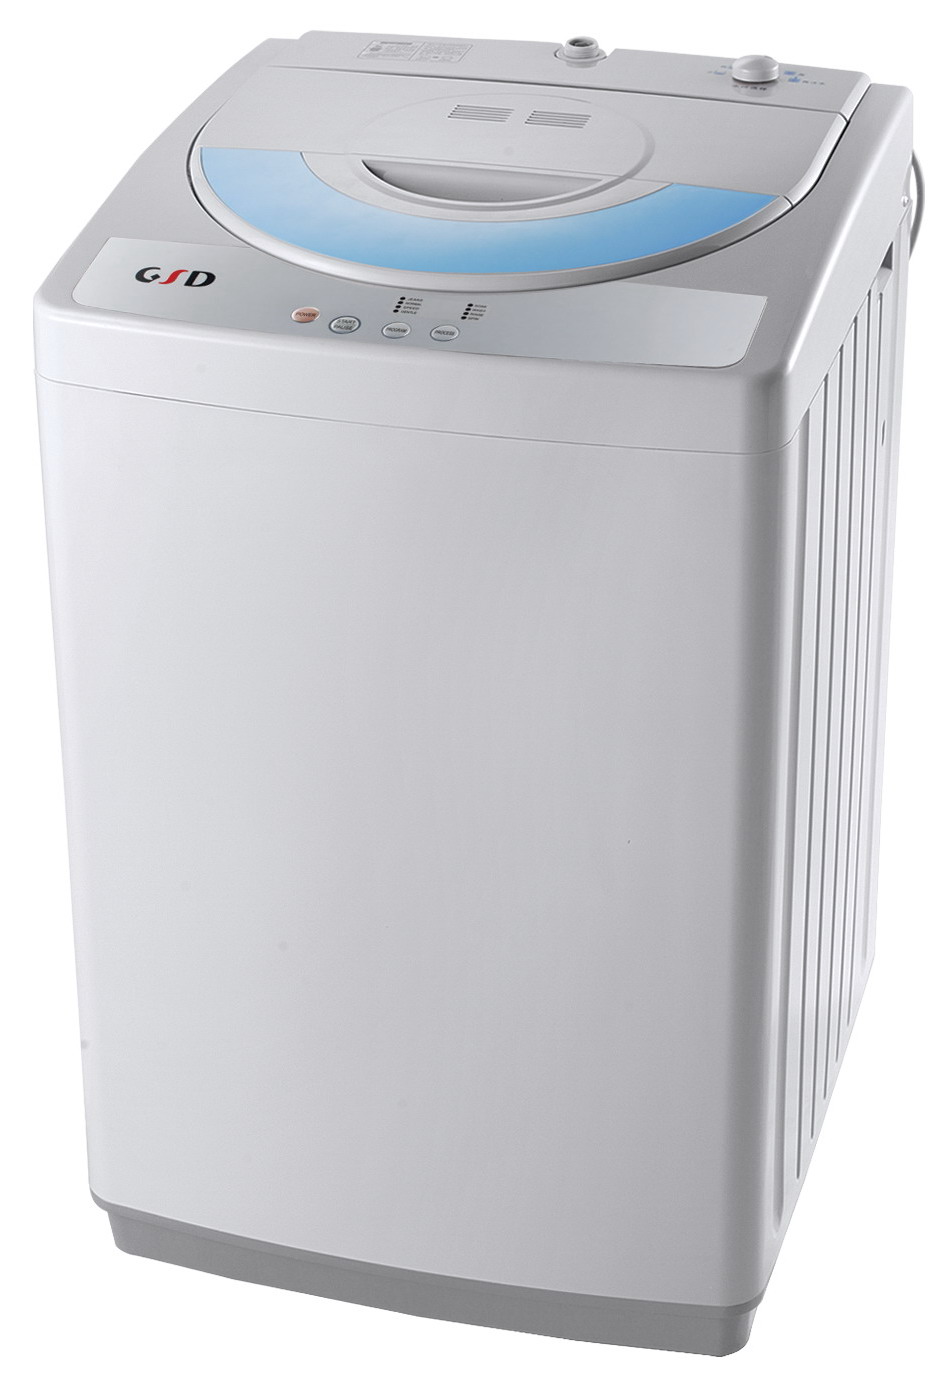 苏州LG洗衣机维修联系电话号码查询